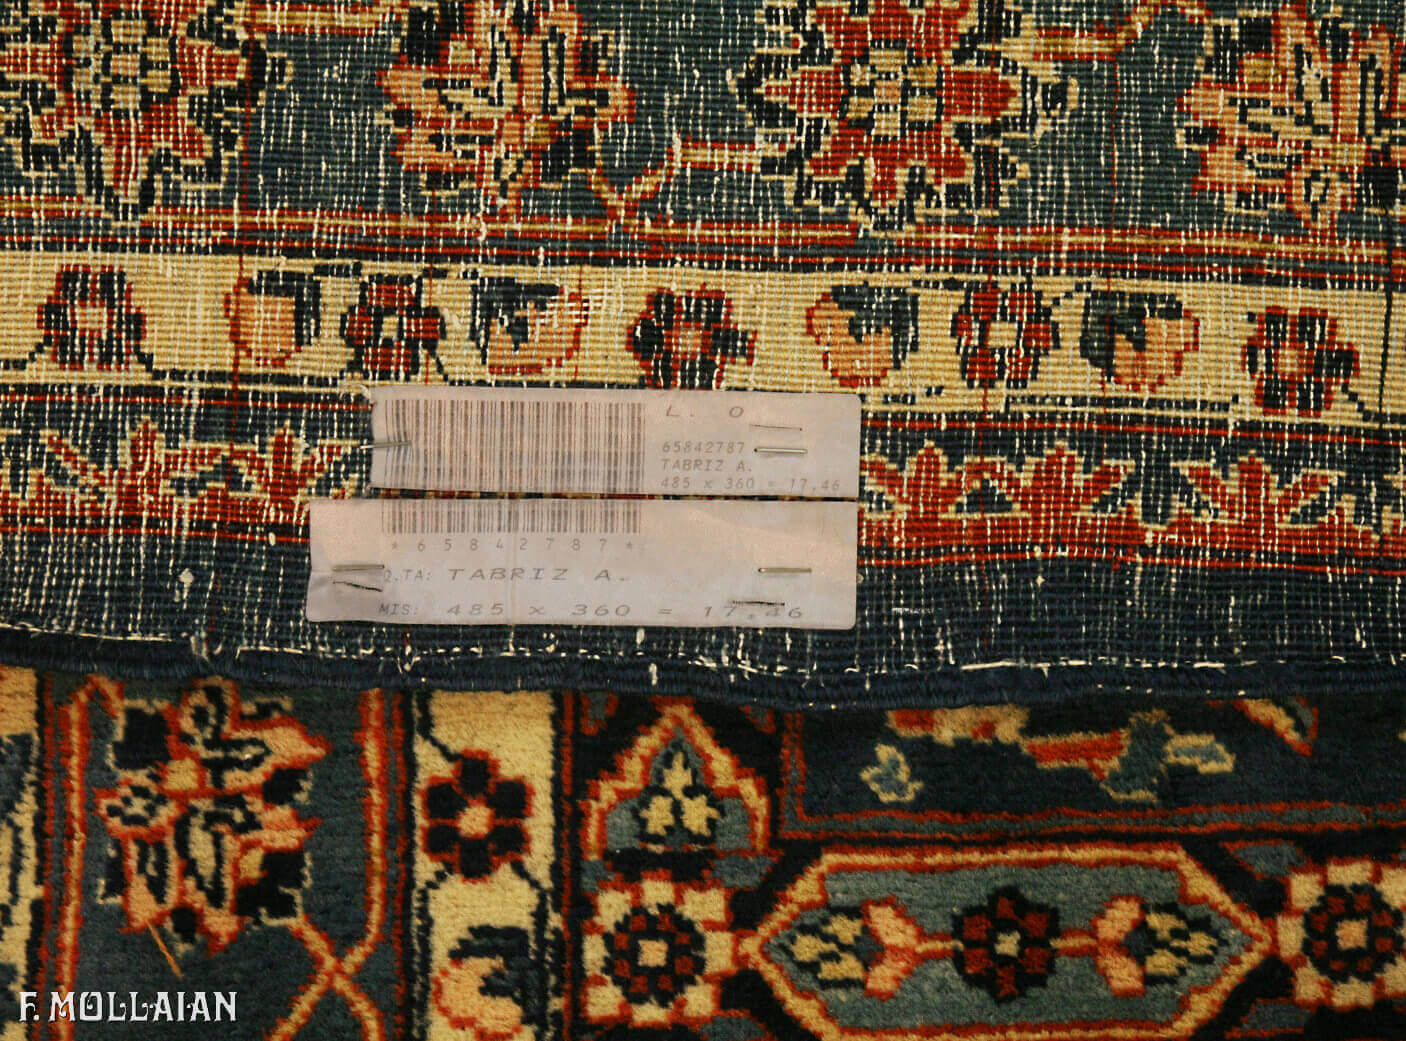 Tappeto Annodato a Mano Persiano Antico Tabriz n°:65842787